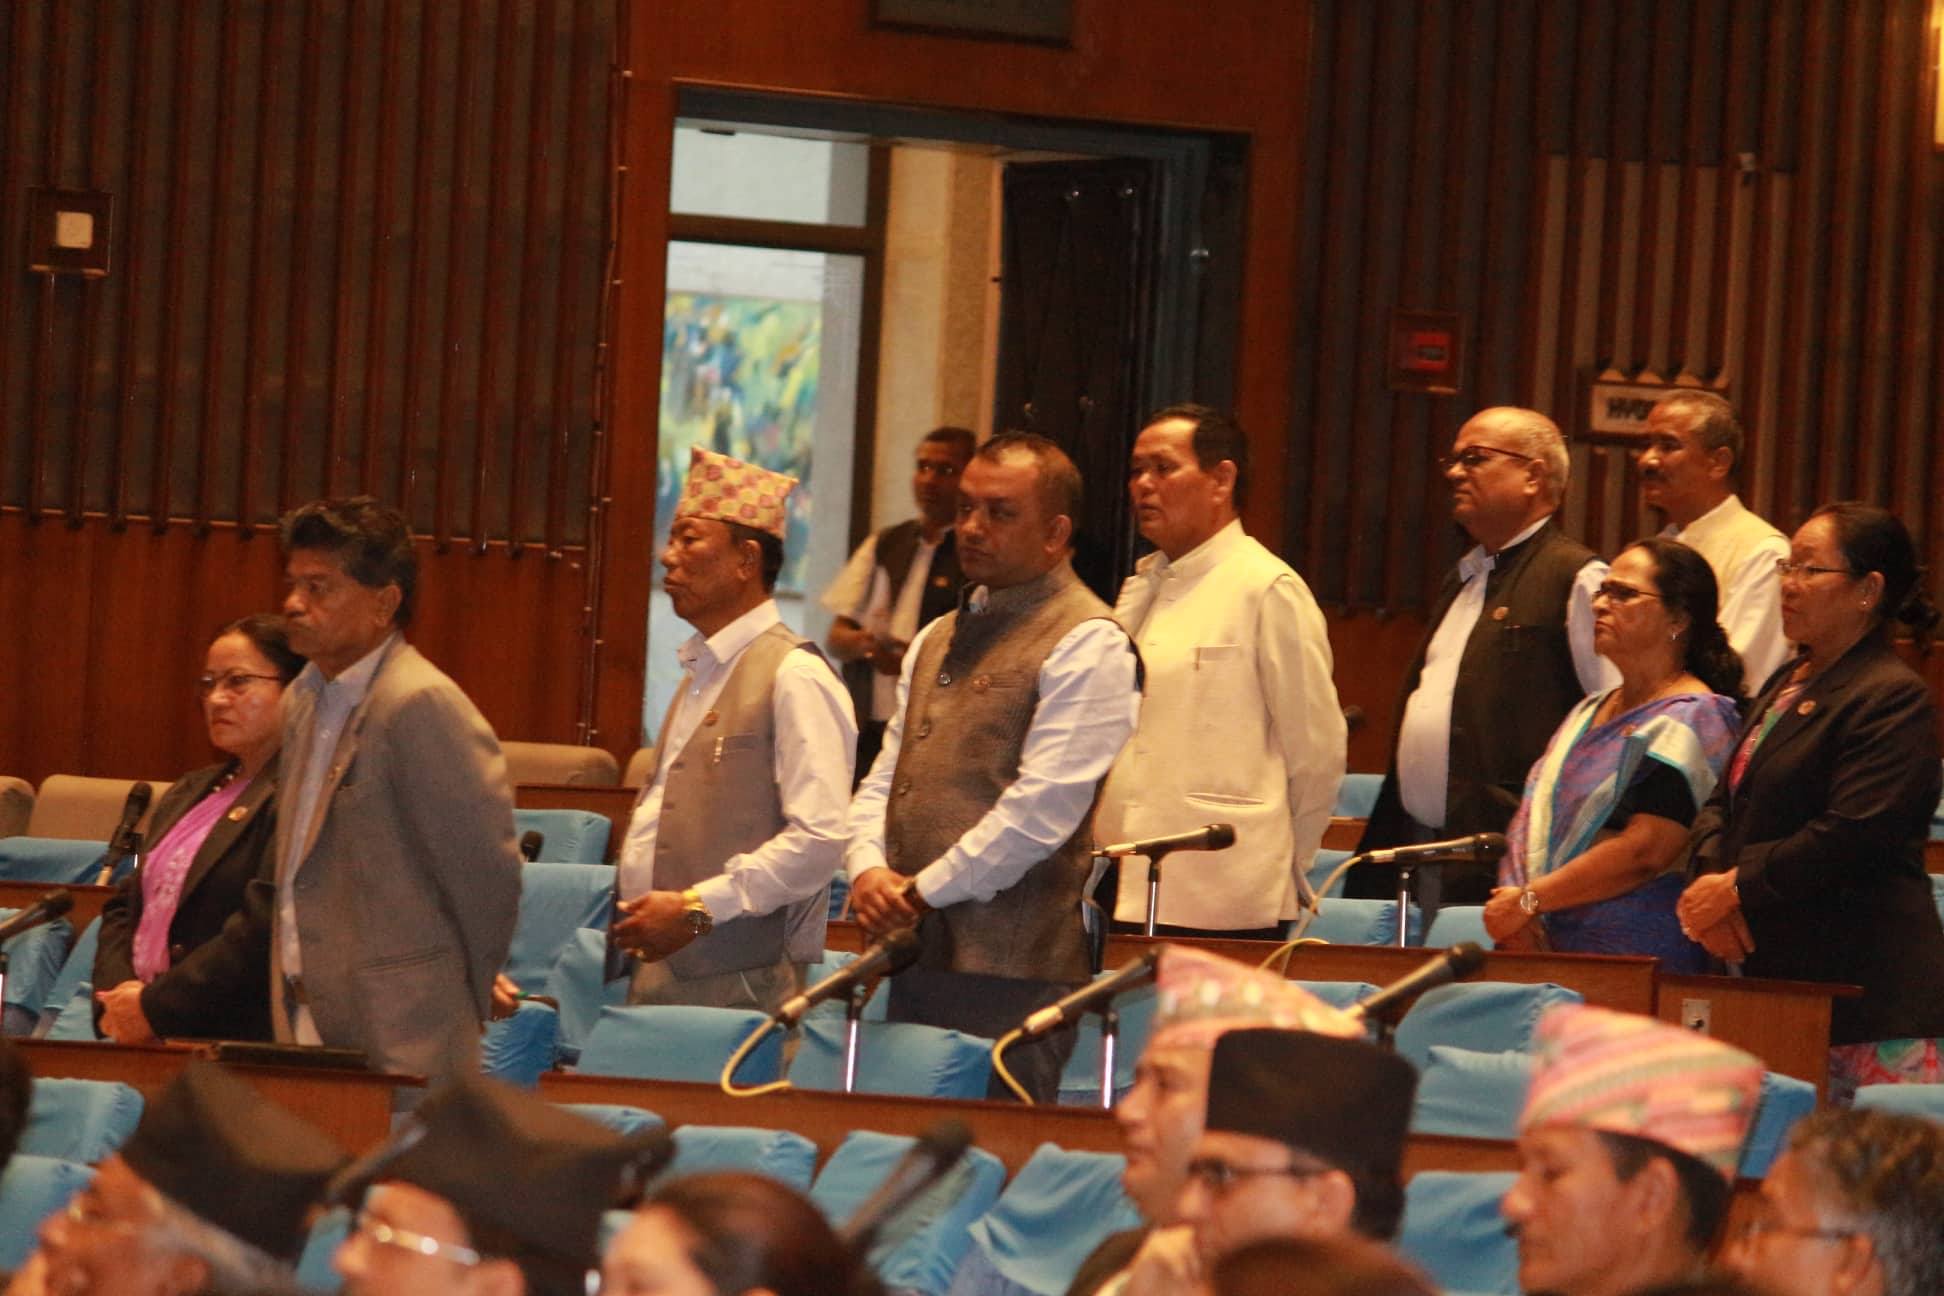 डा. गोविन्द केसीको माग पूरा हुनुपर्ने र चिकित्सा शिक्षा विधेयकको विरोध गर्दै प्रमुख प्रतिपक्षी नेपाली कांग्रेसका सांसदहरु । तस्बिरः सरिता खड्का